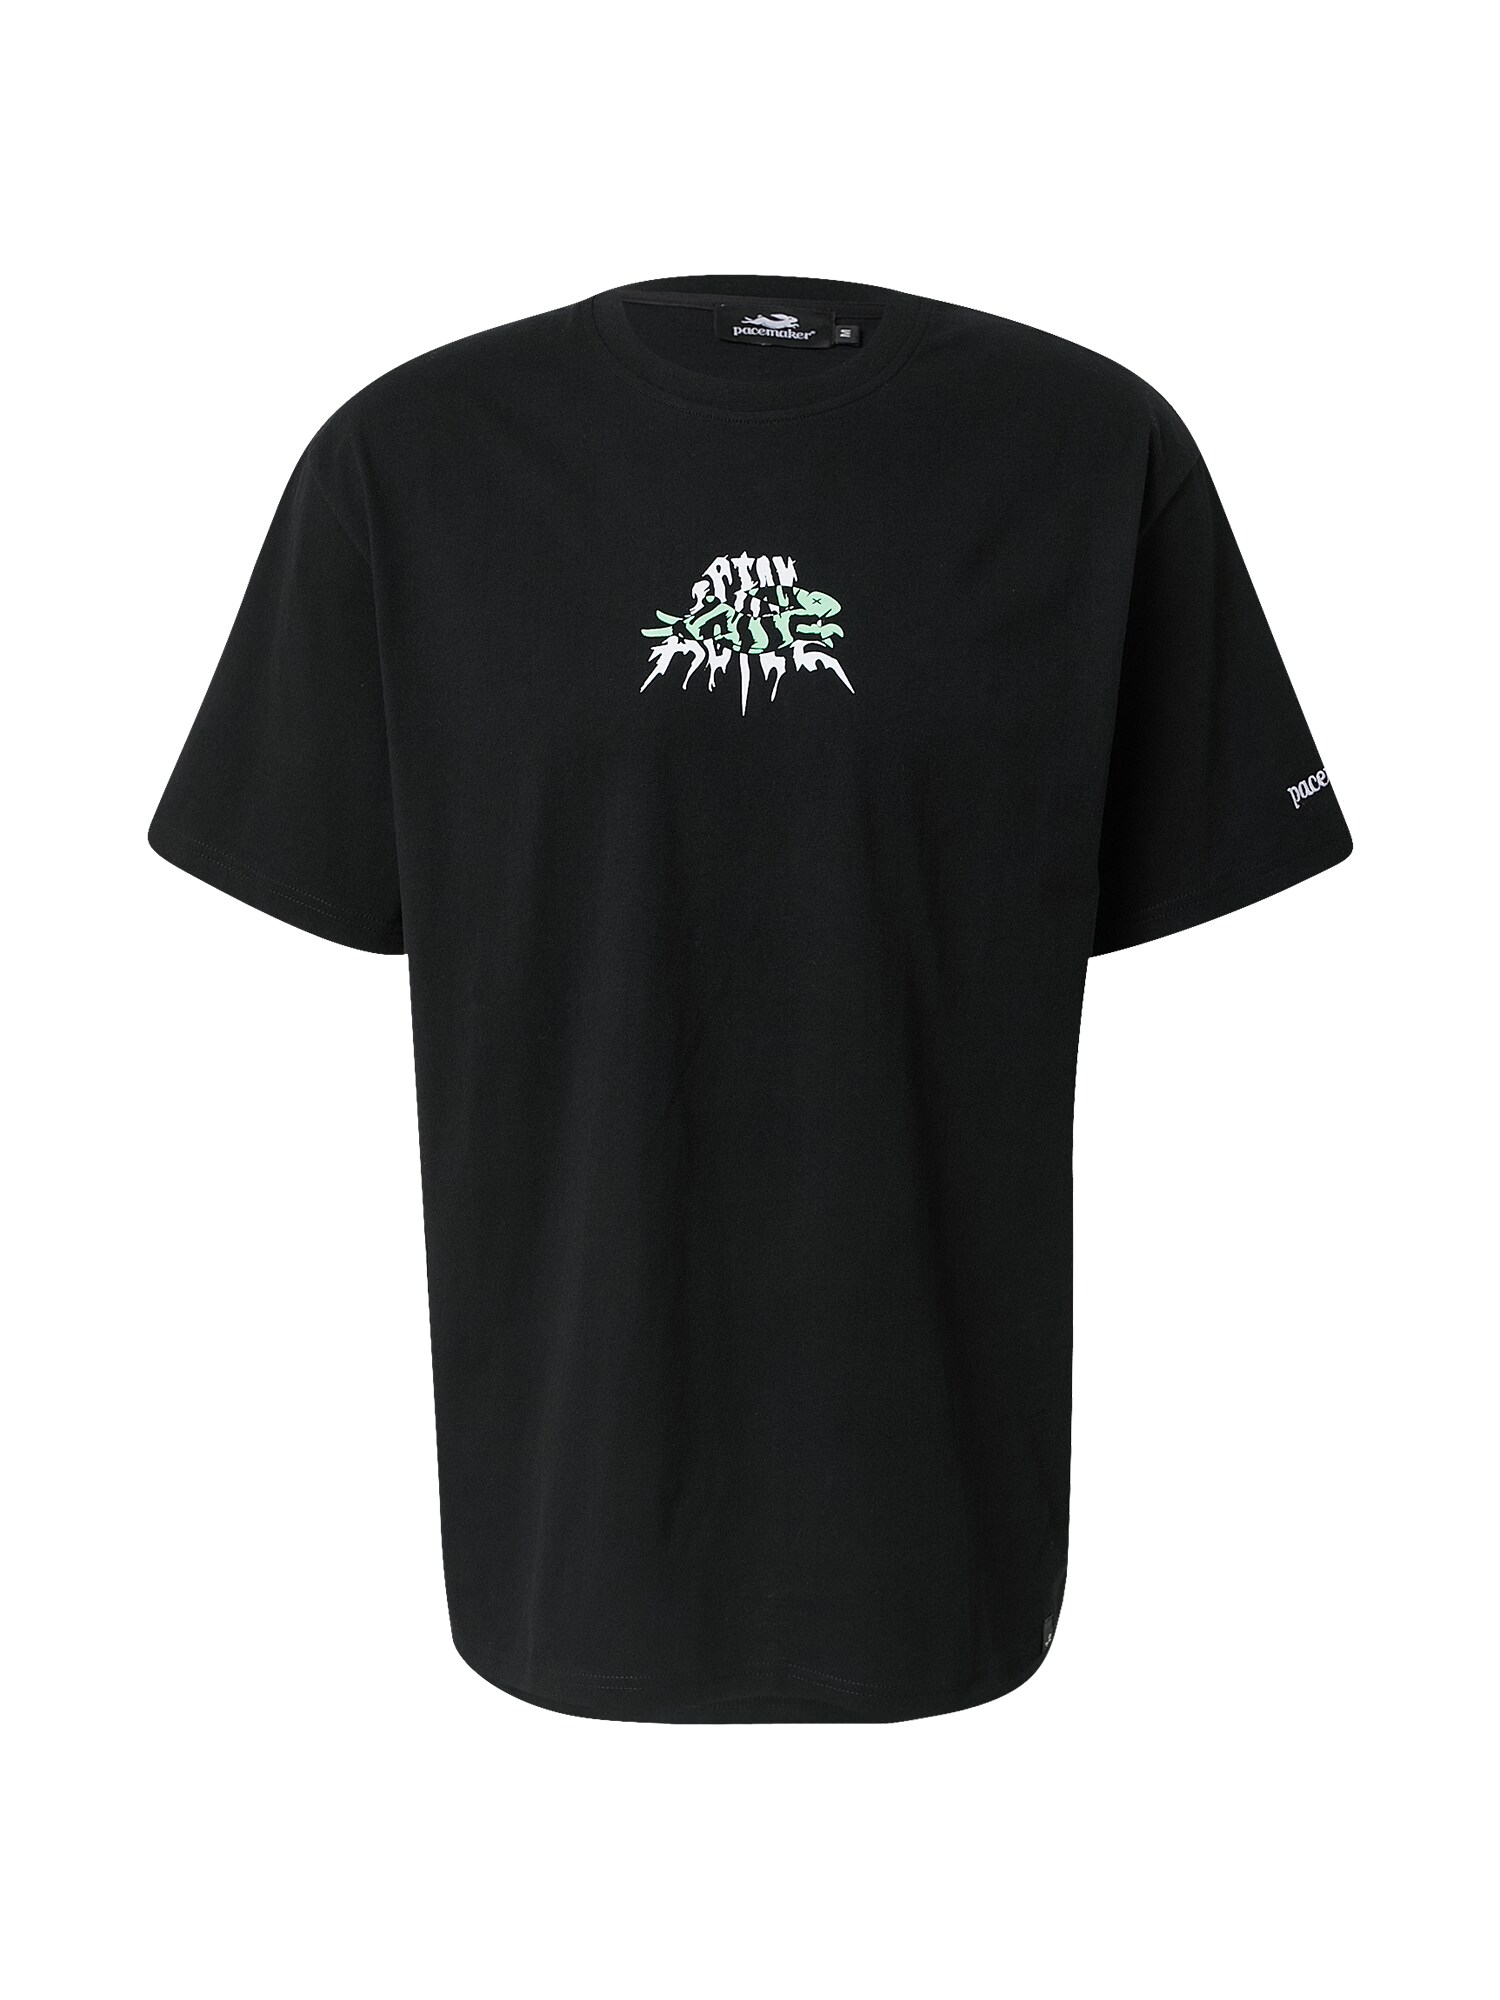 Pacemaker Marškinėliai 'STAY AGILE' juoda / balta / šviesiai žalia